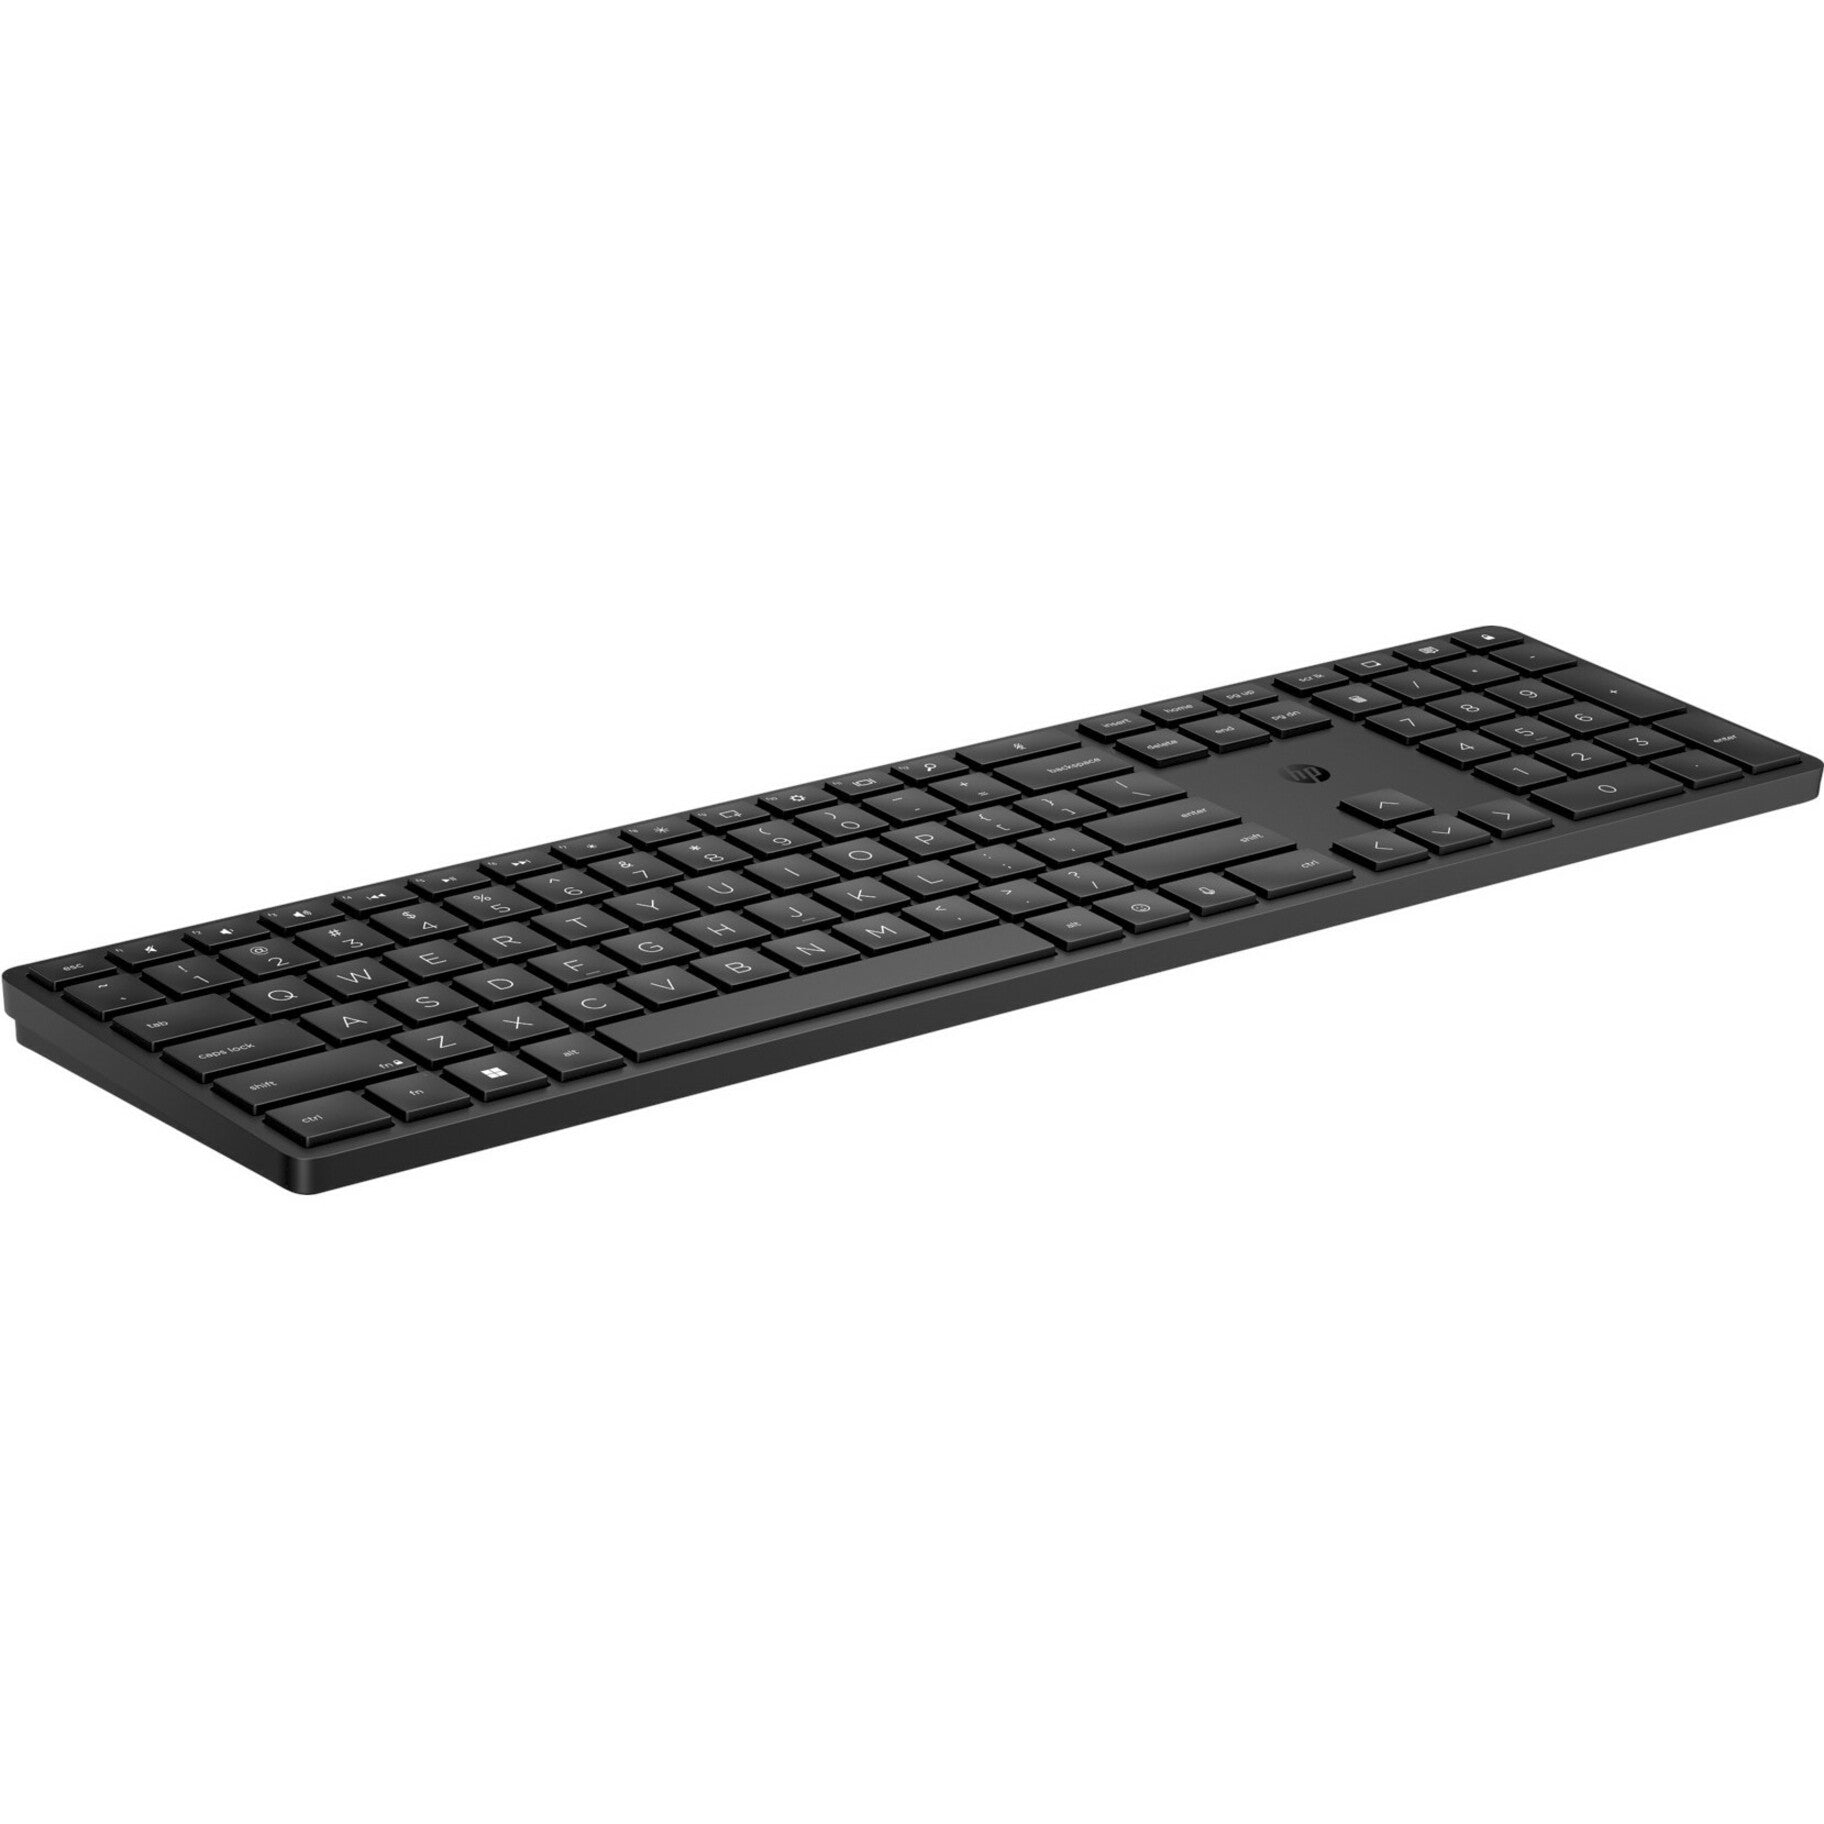 HP 455 Programmable Wireless Keyboard, English (US), Battery Indicator, LED Indicator